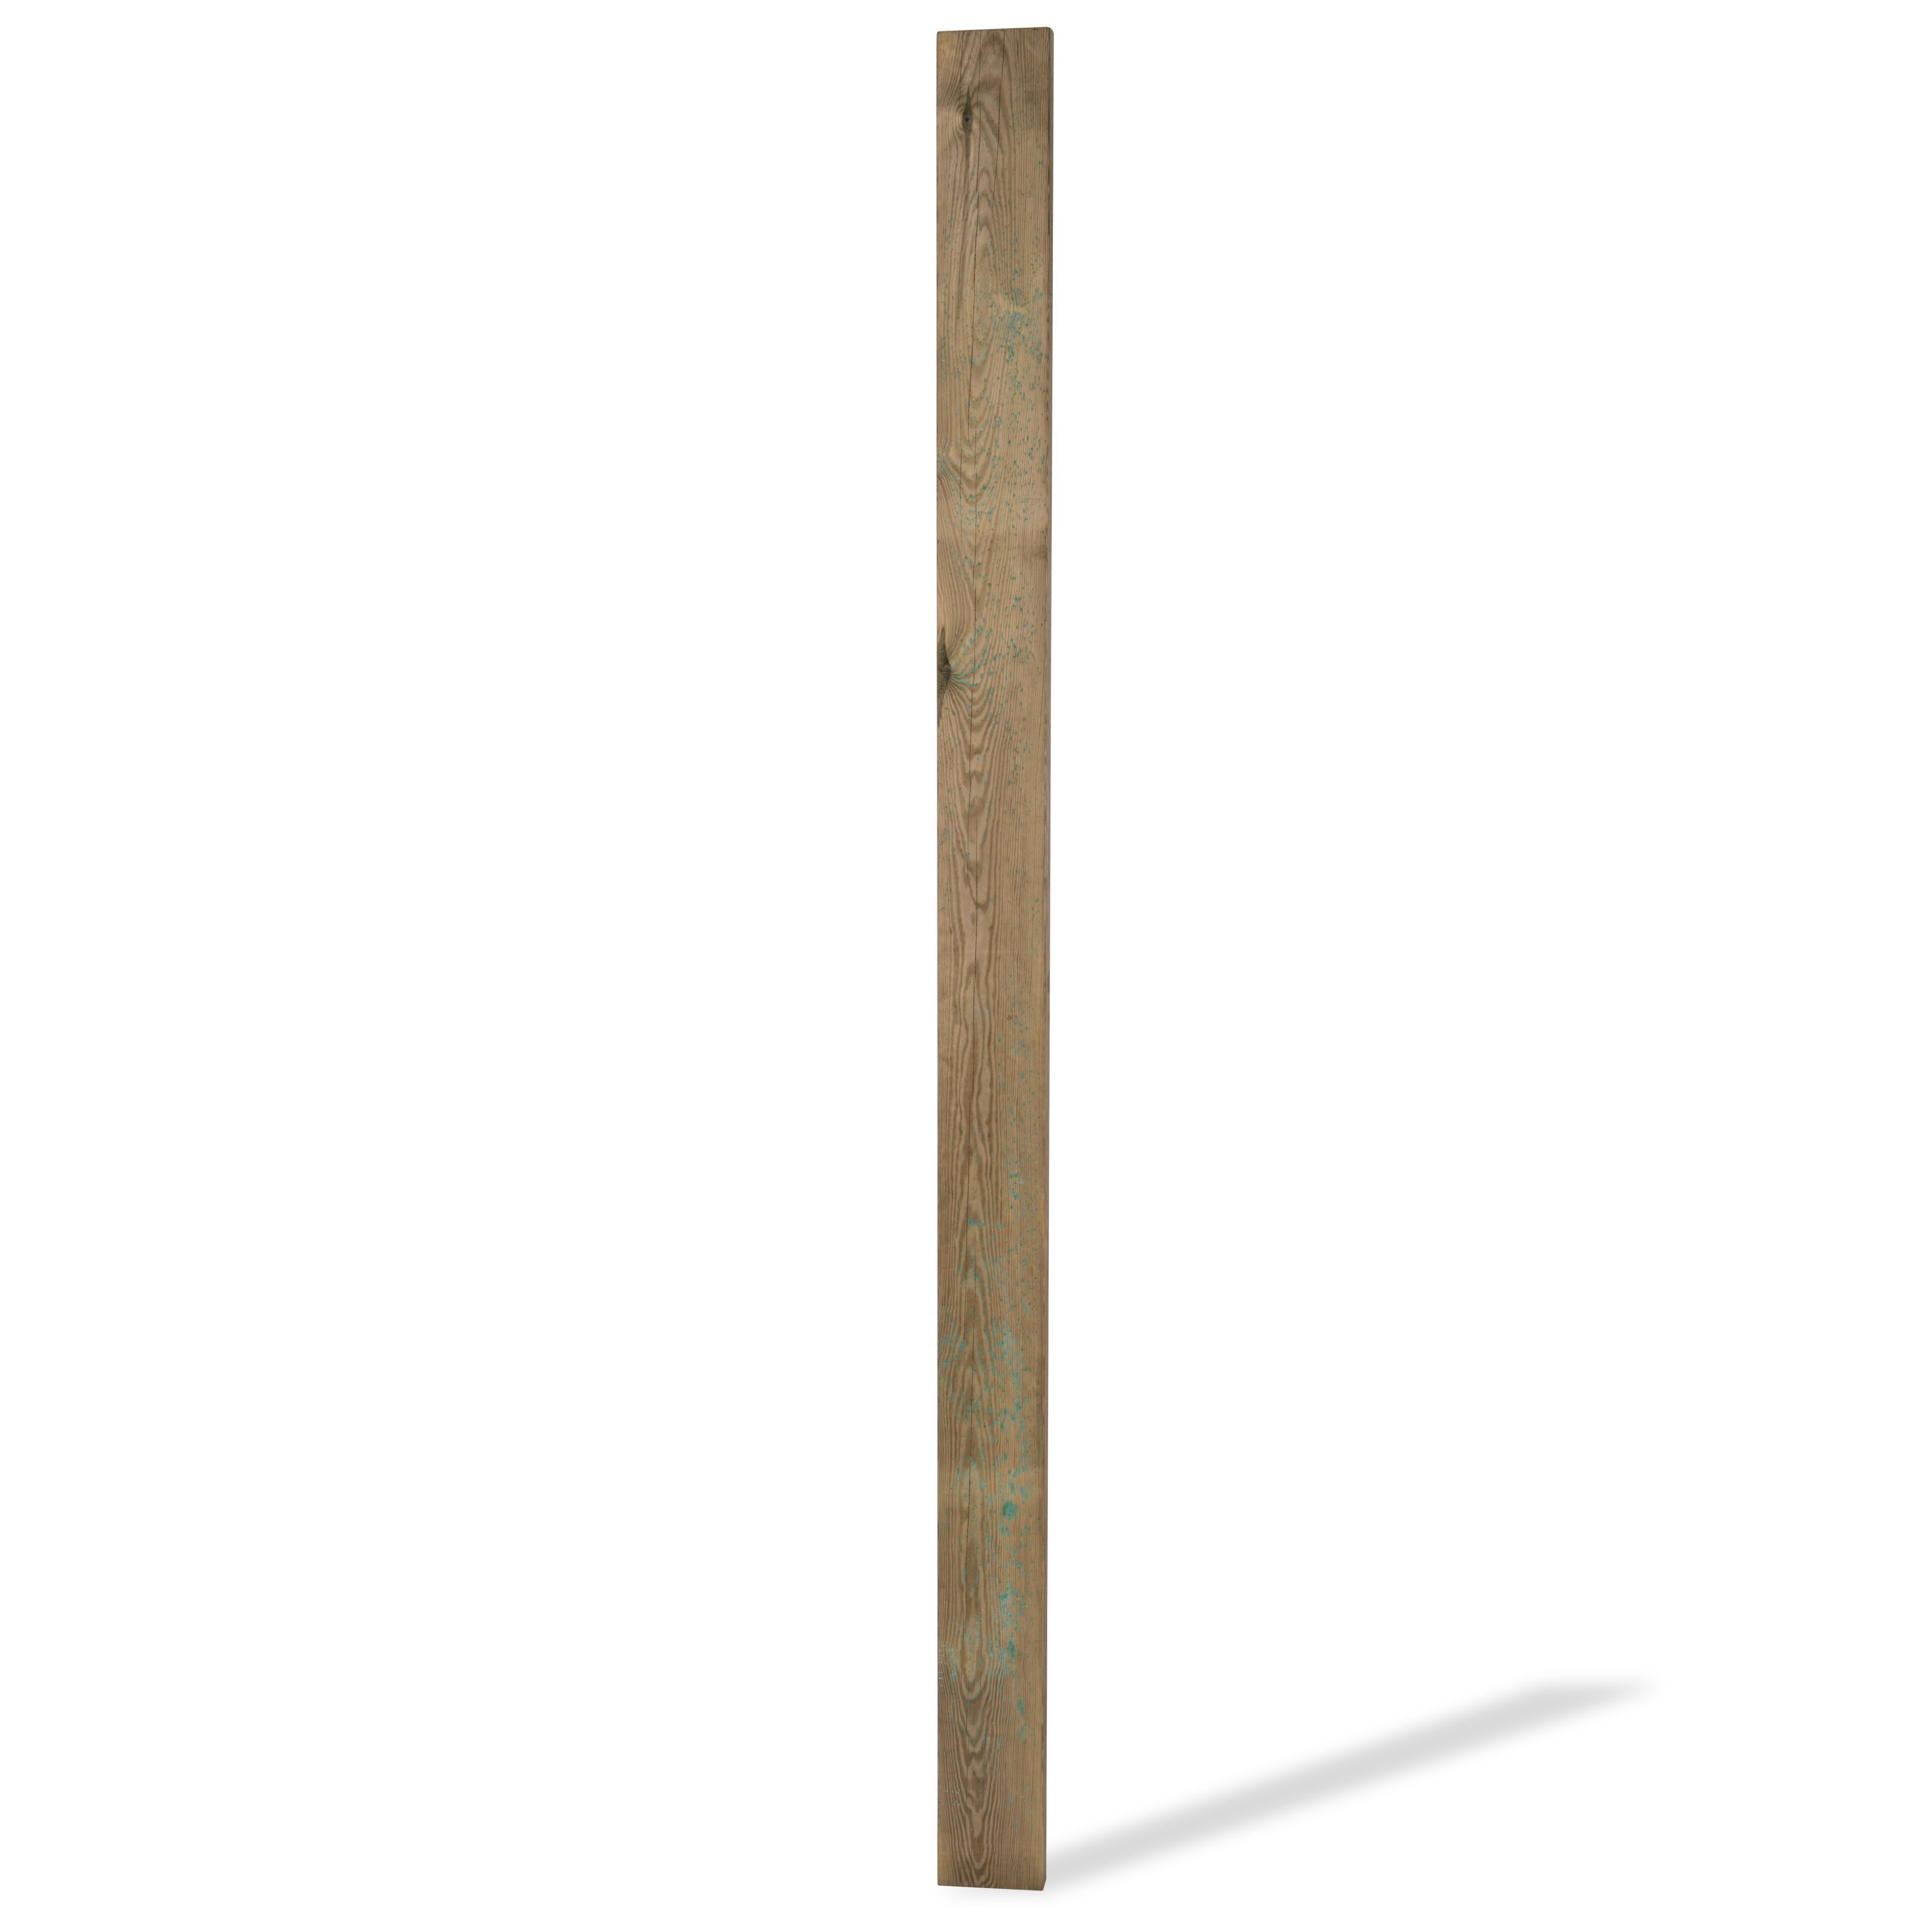 Metsä Wood Elbi Pine Deck joist (L)2.4m (W)144mm (T)44mm